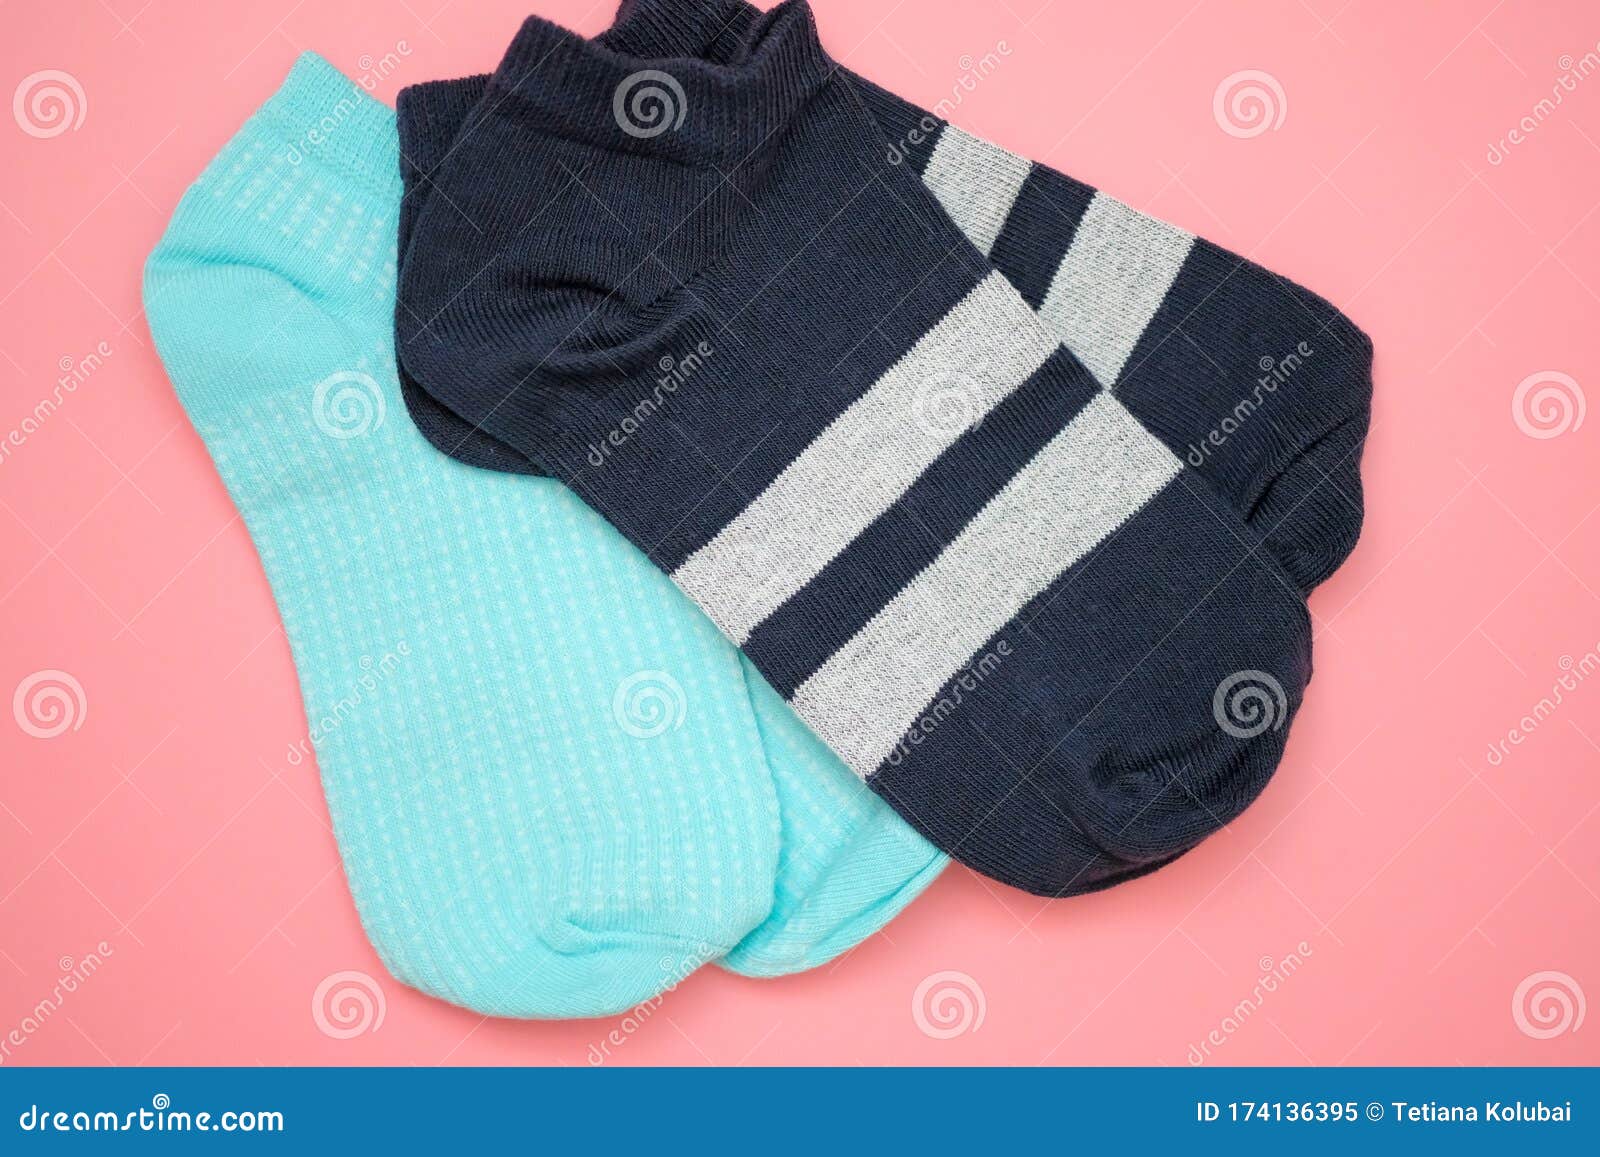 https://thumbs.dreamstime.com/z/dos-pares-de-calcetines-deporte-en-una-opini%C3%B3n-beige-rosado-arriba-del-fondo-medias-para-mujer-cortos-color-azul-y-con-banda-174136395.jpg